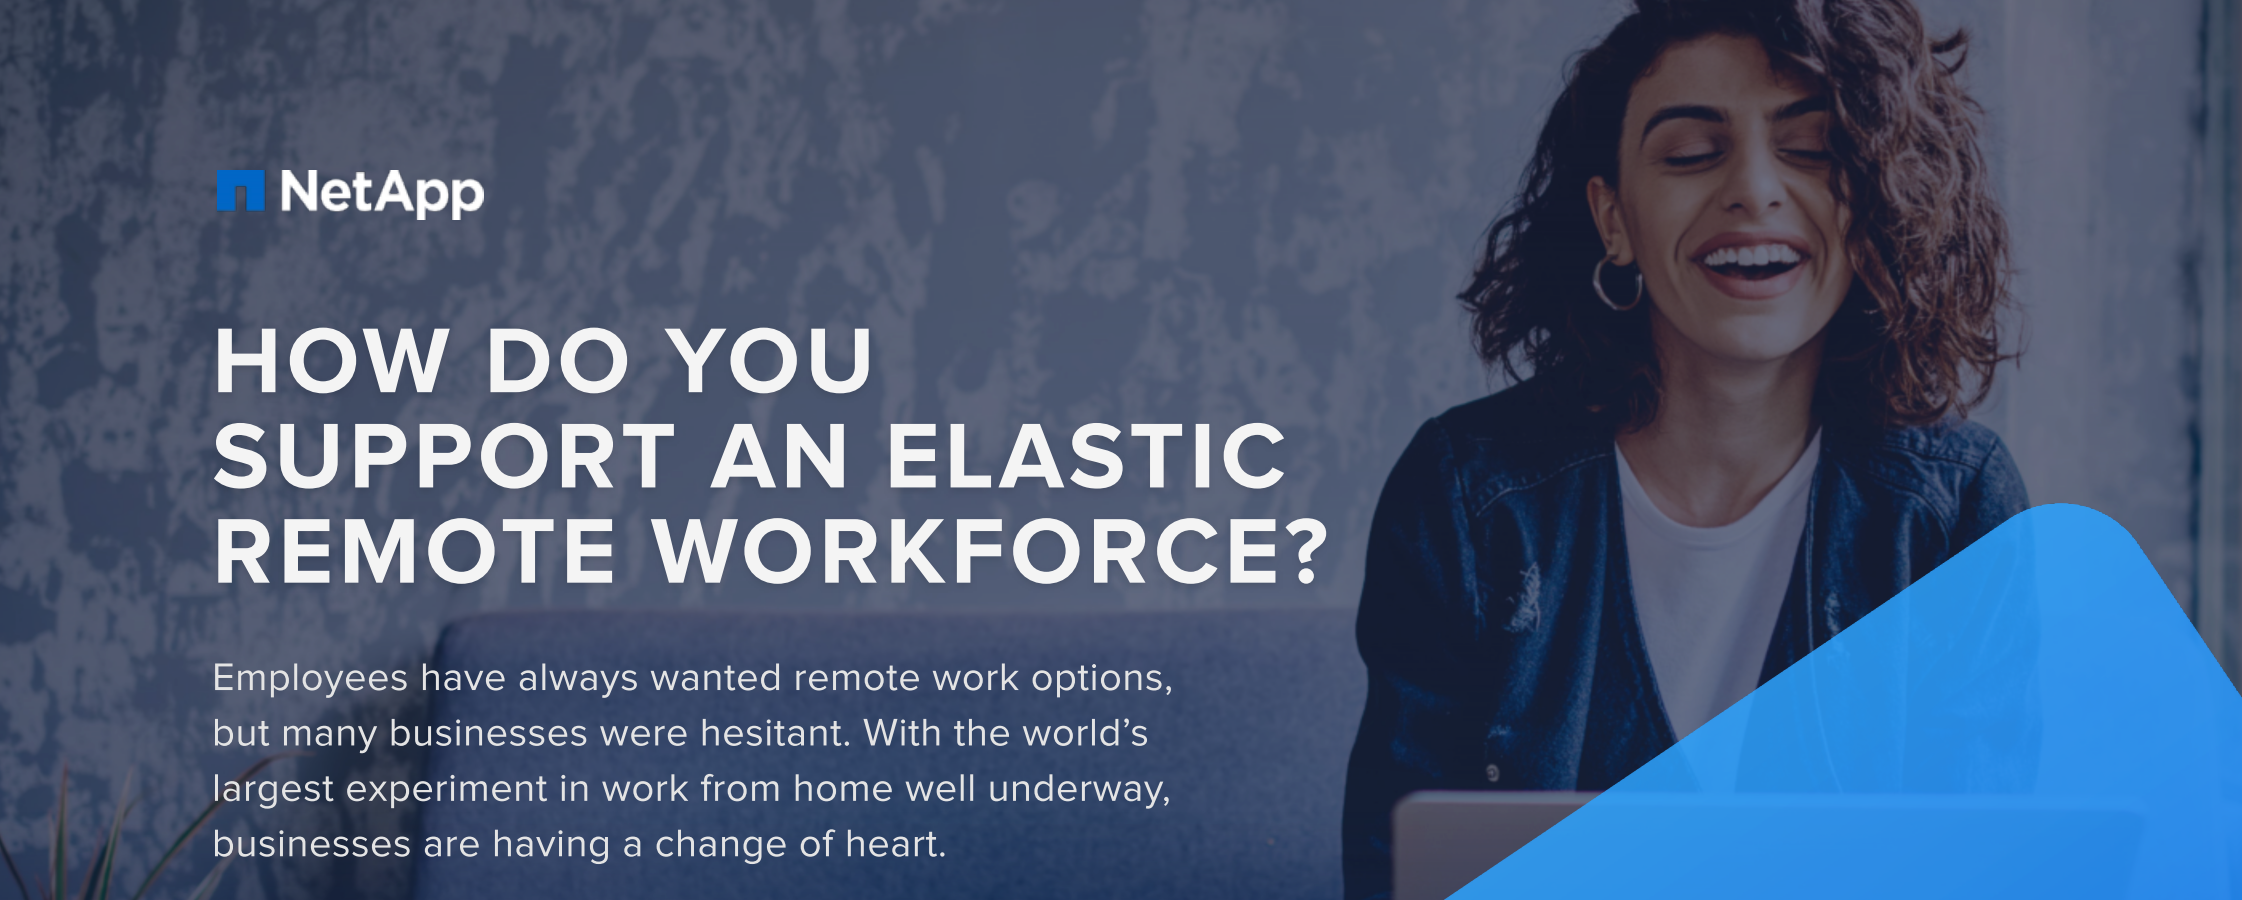 elastric remote workforce netapp